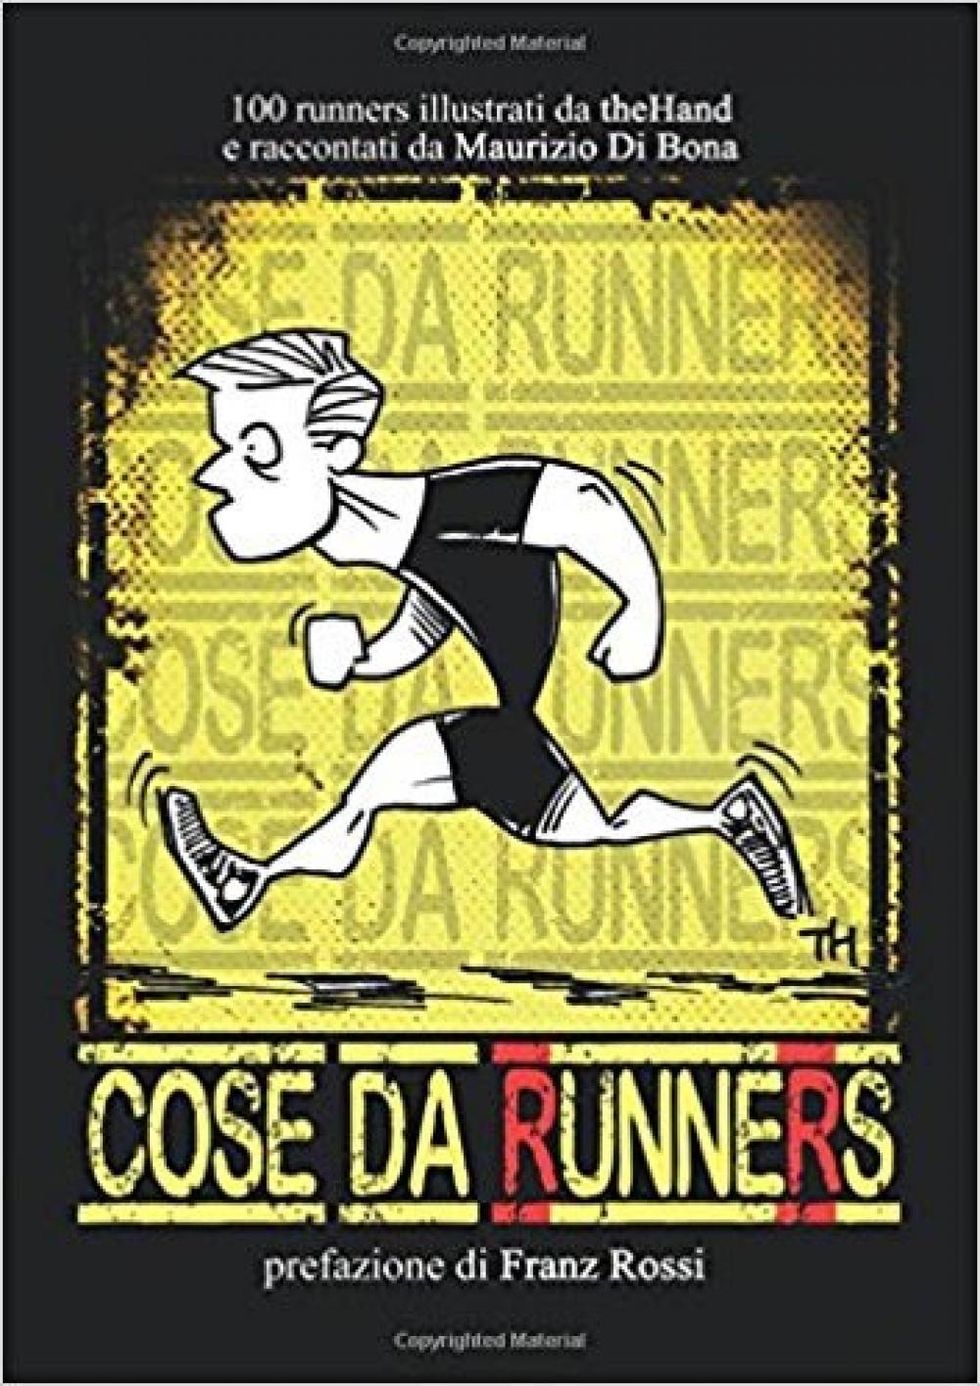 La cover della primissima edizione di “Cose da runners” distribuita solo in rete